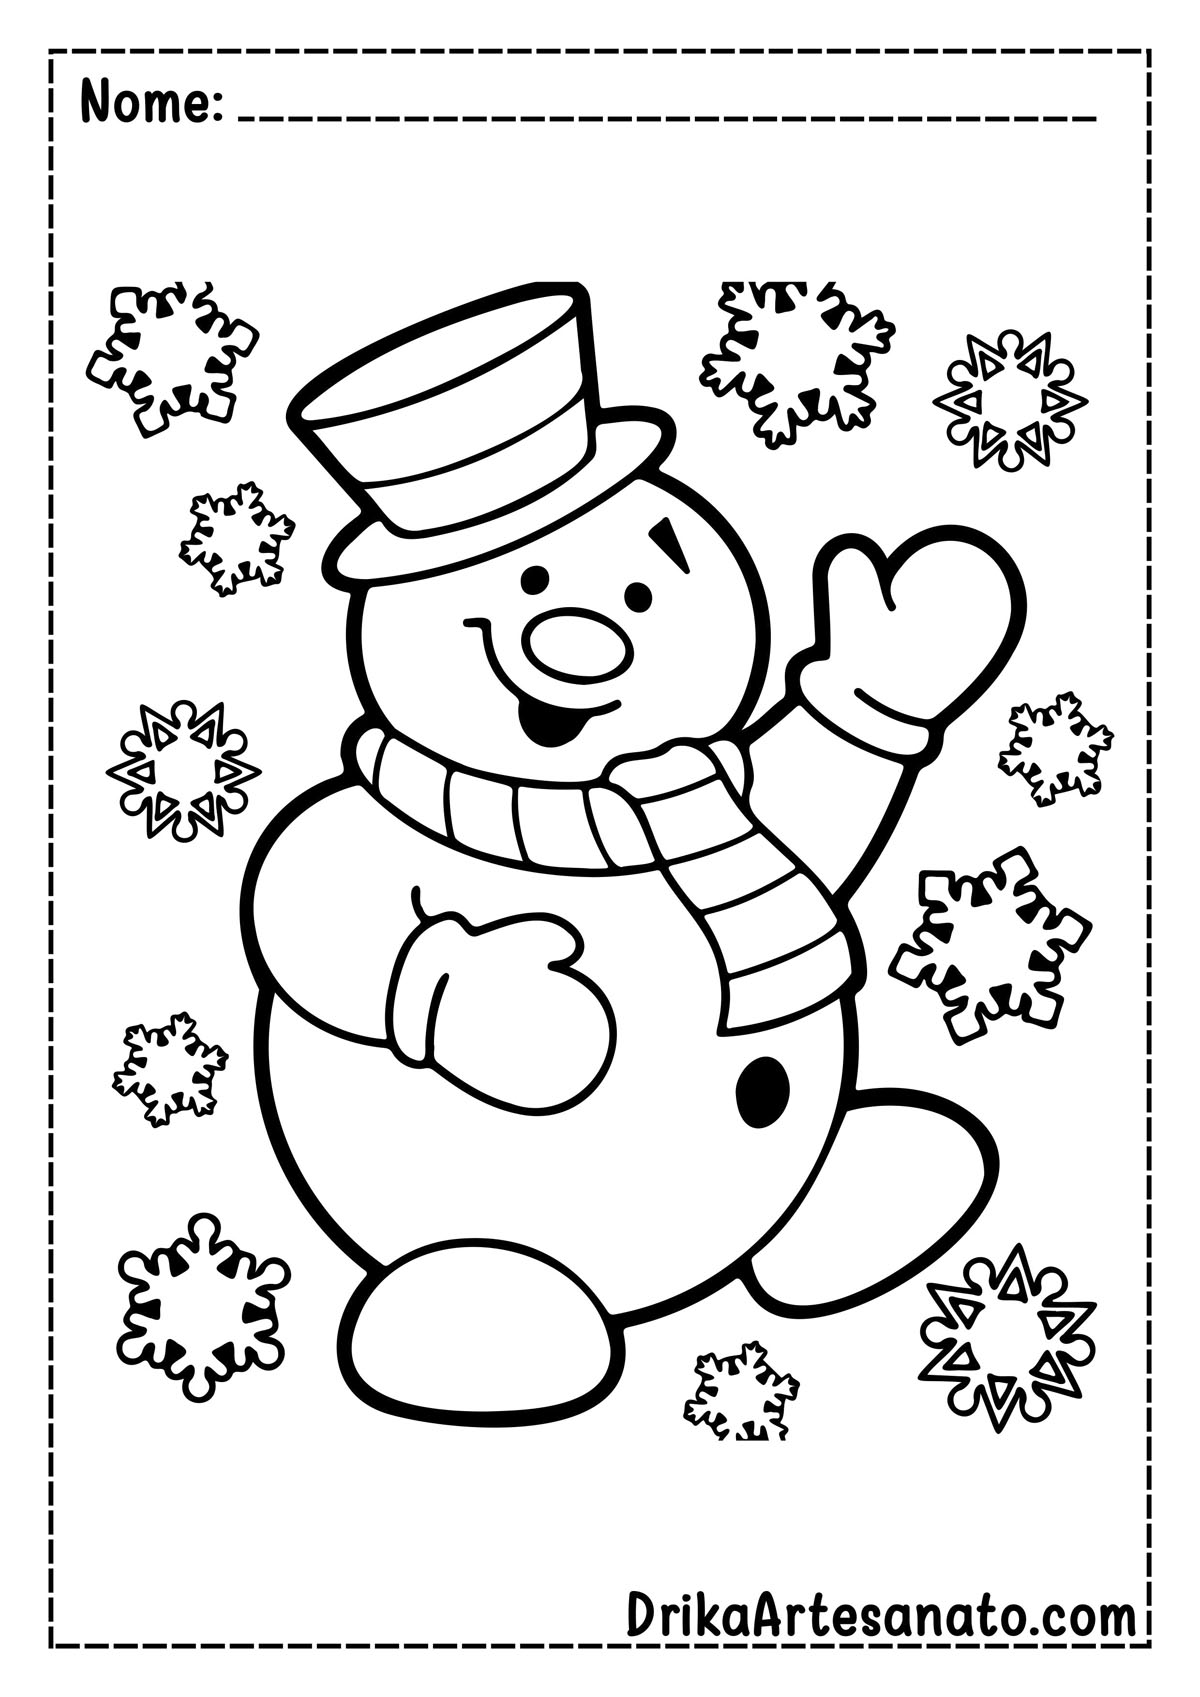 Desenho de Boneco de Neve para Colorir e Imprimir